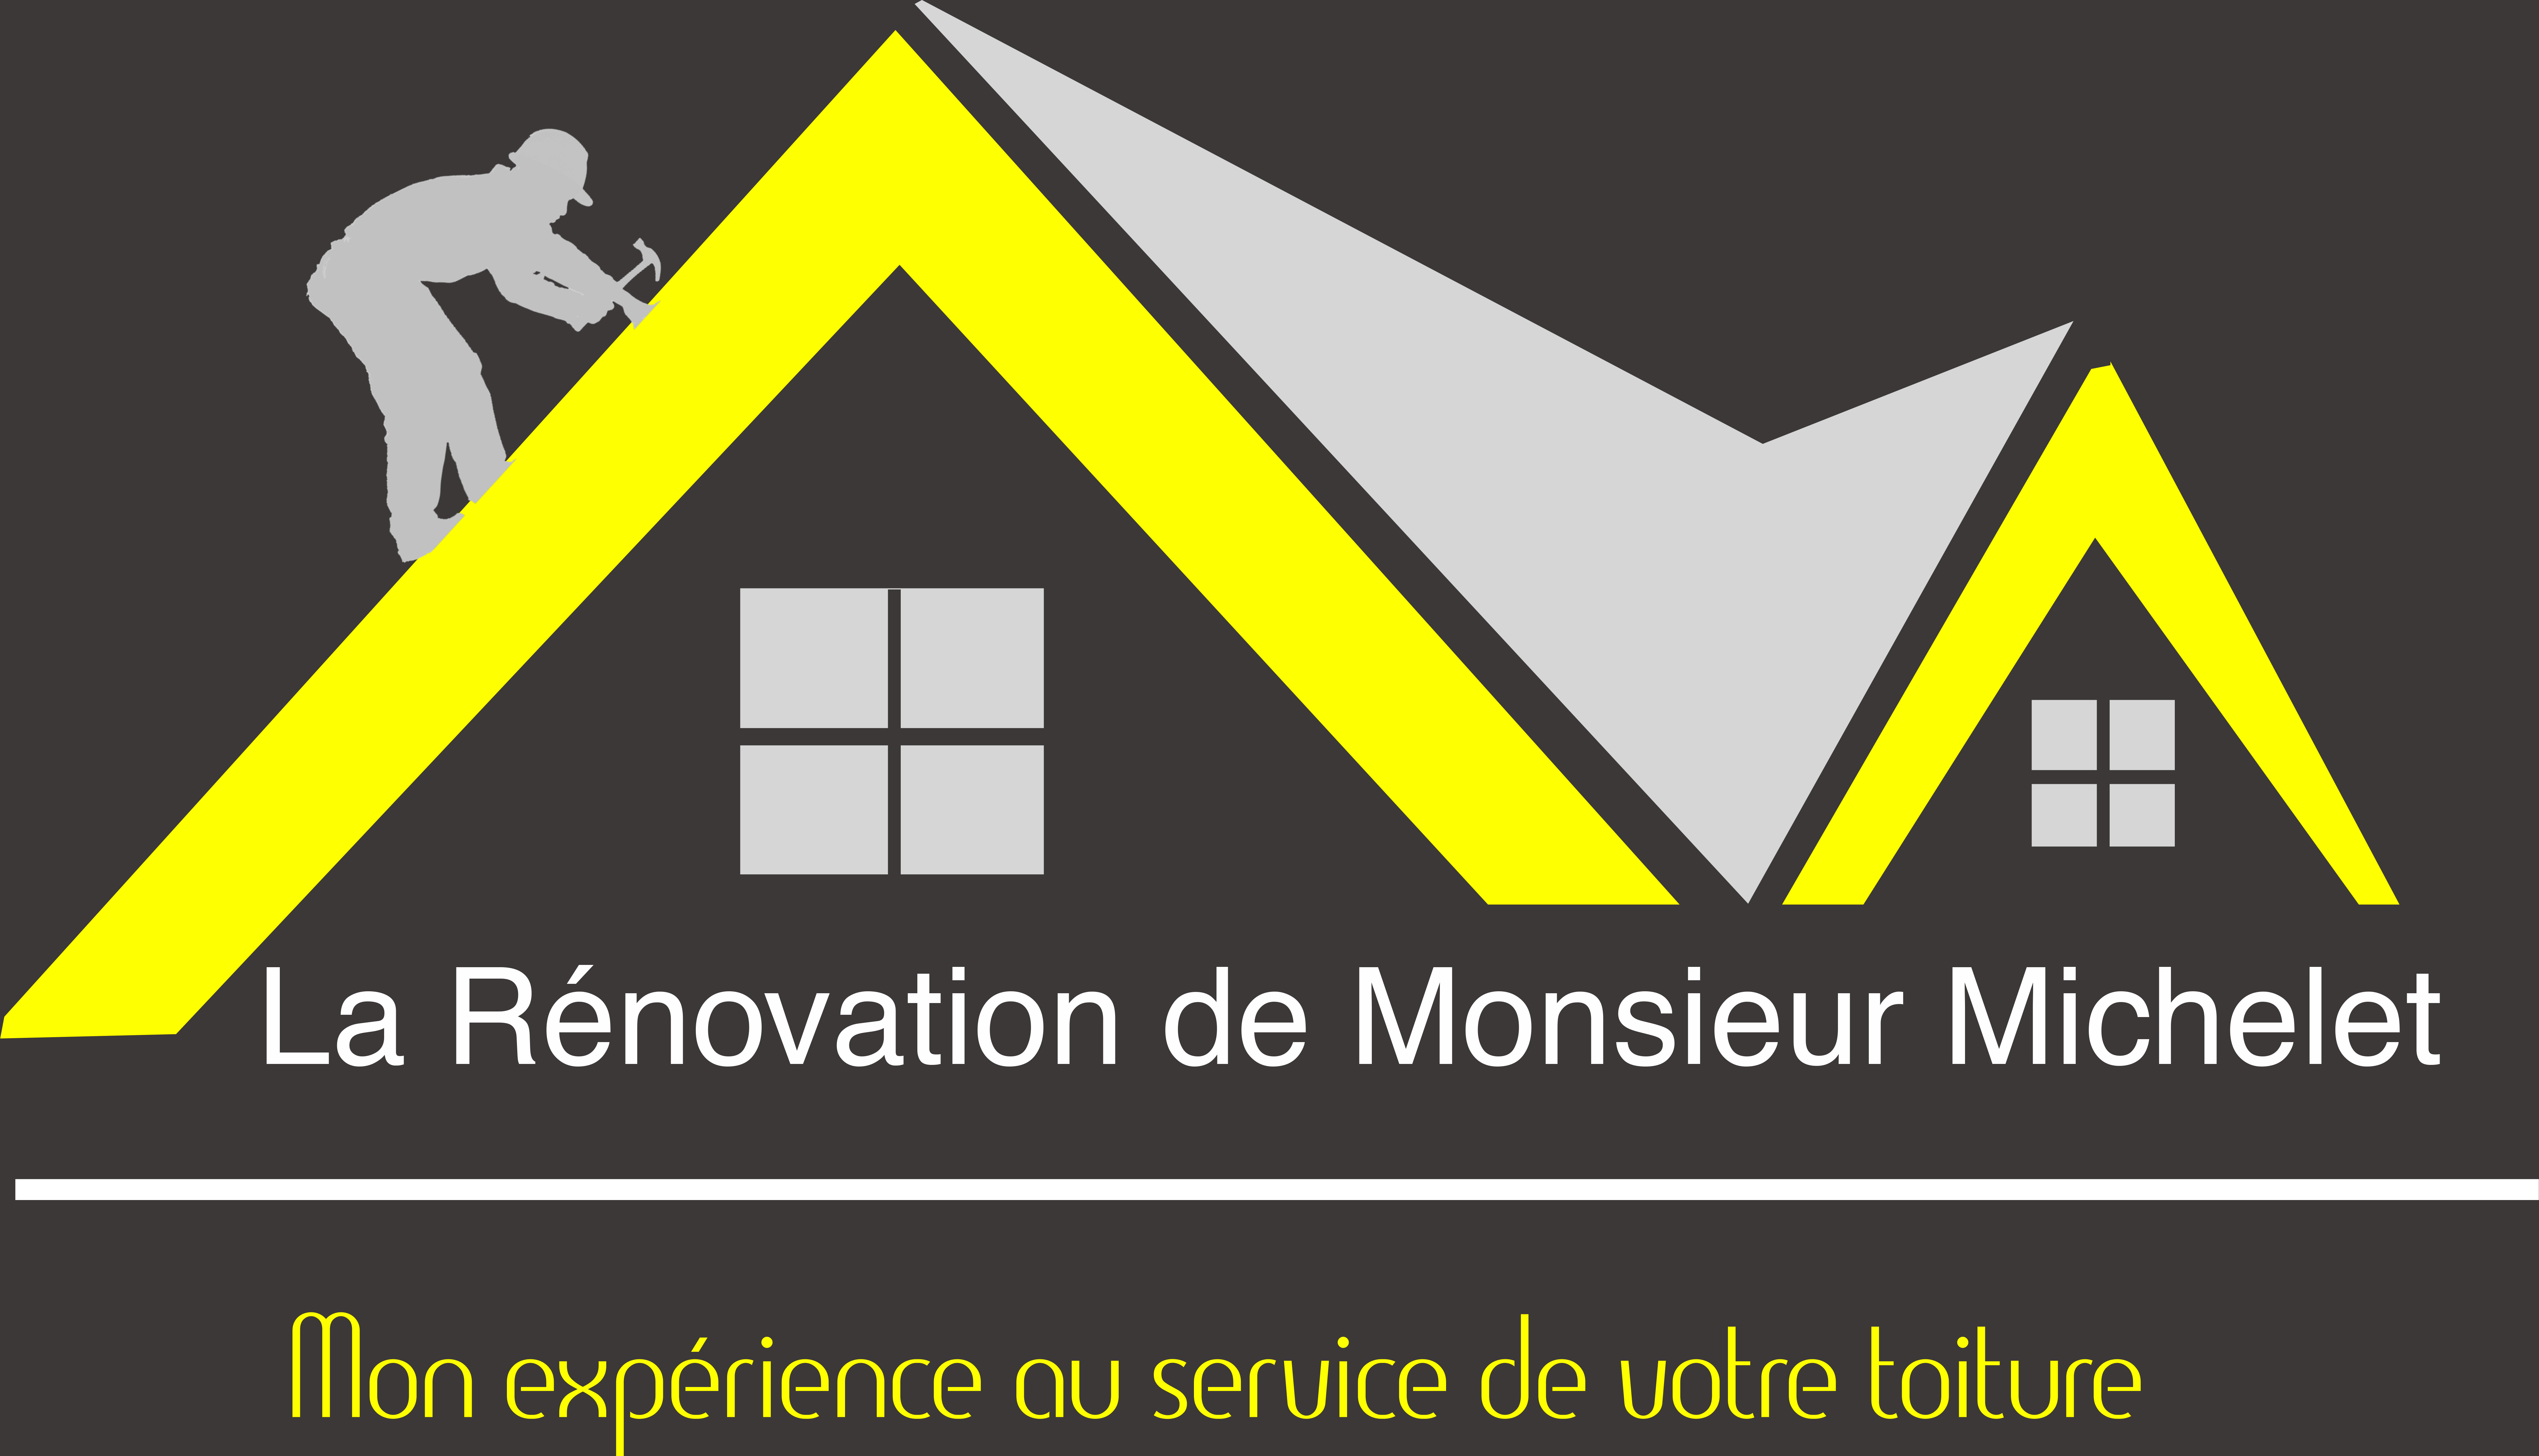 La rénovation de Mr Michelet est une entreprise de couverture et rénovation située à Porcheville (78440) dans les Yvelines (78).